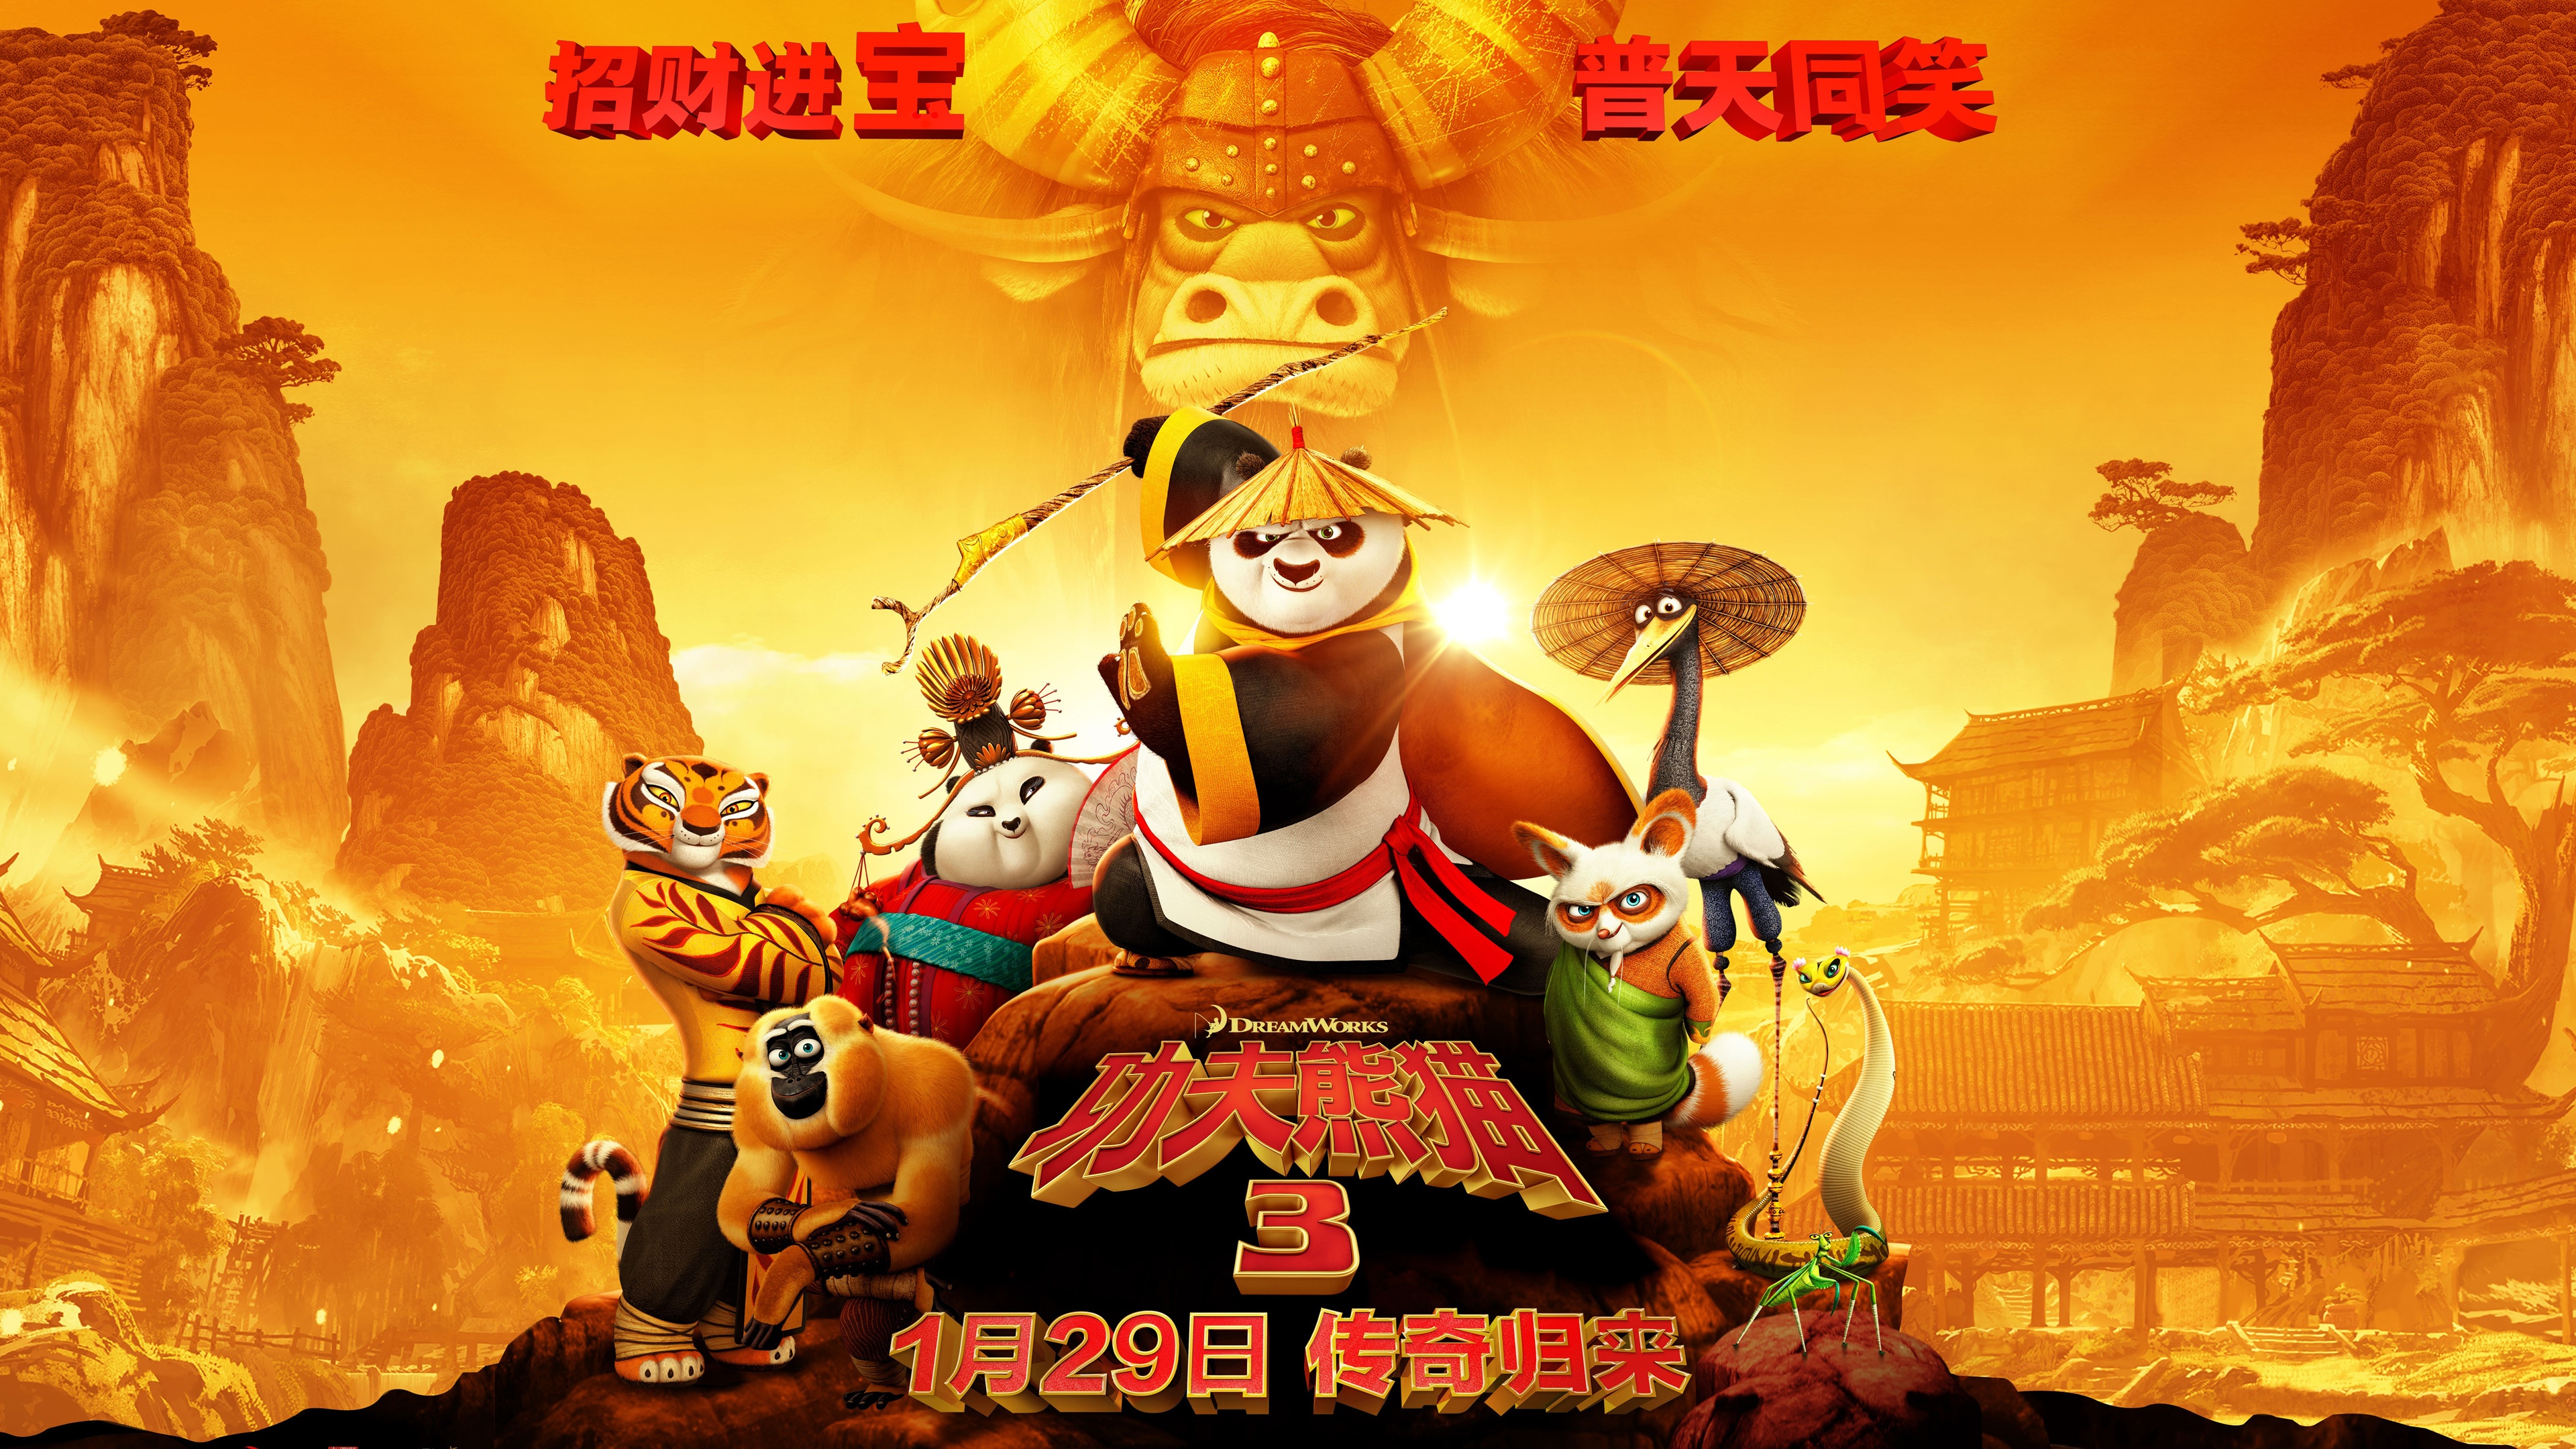 kung fu panda 3 free movie online